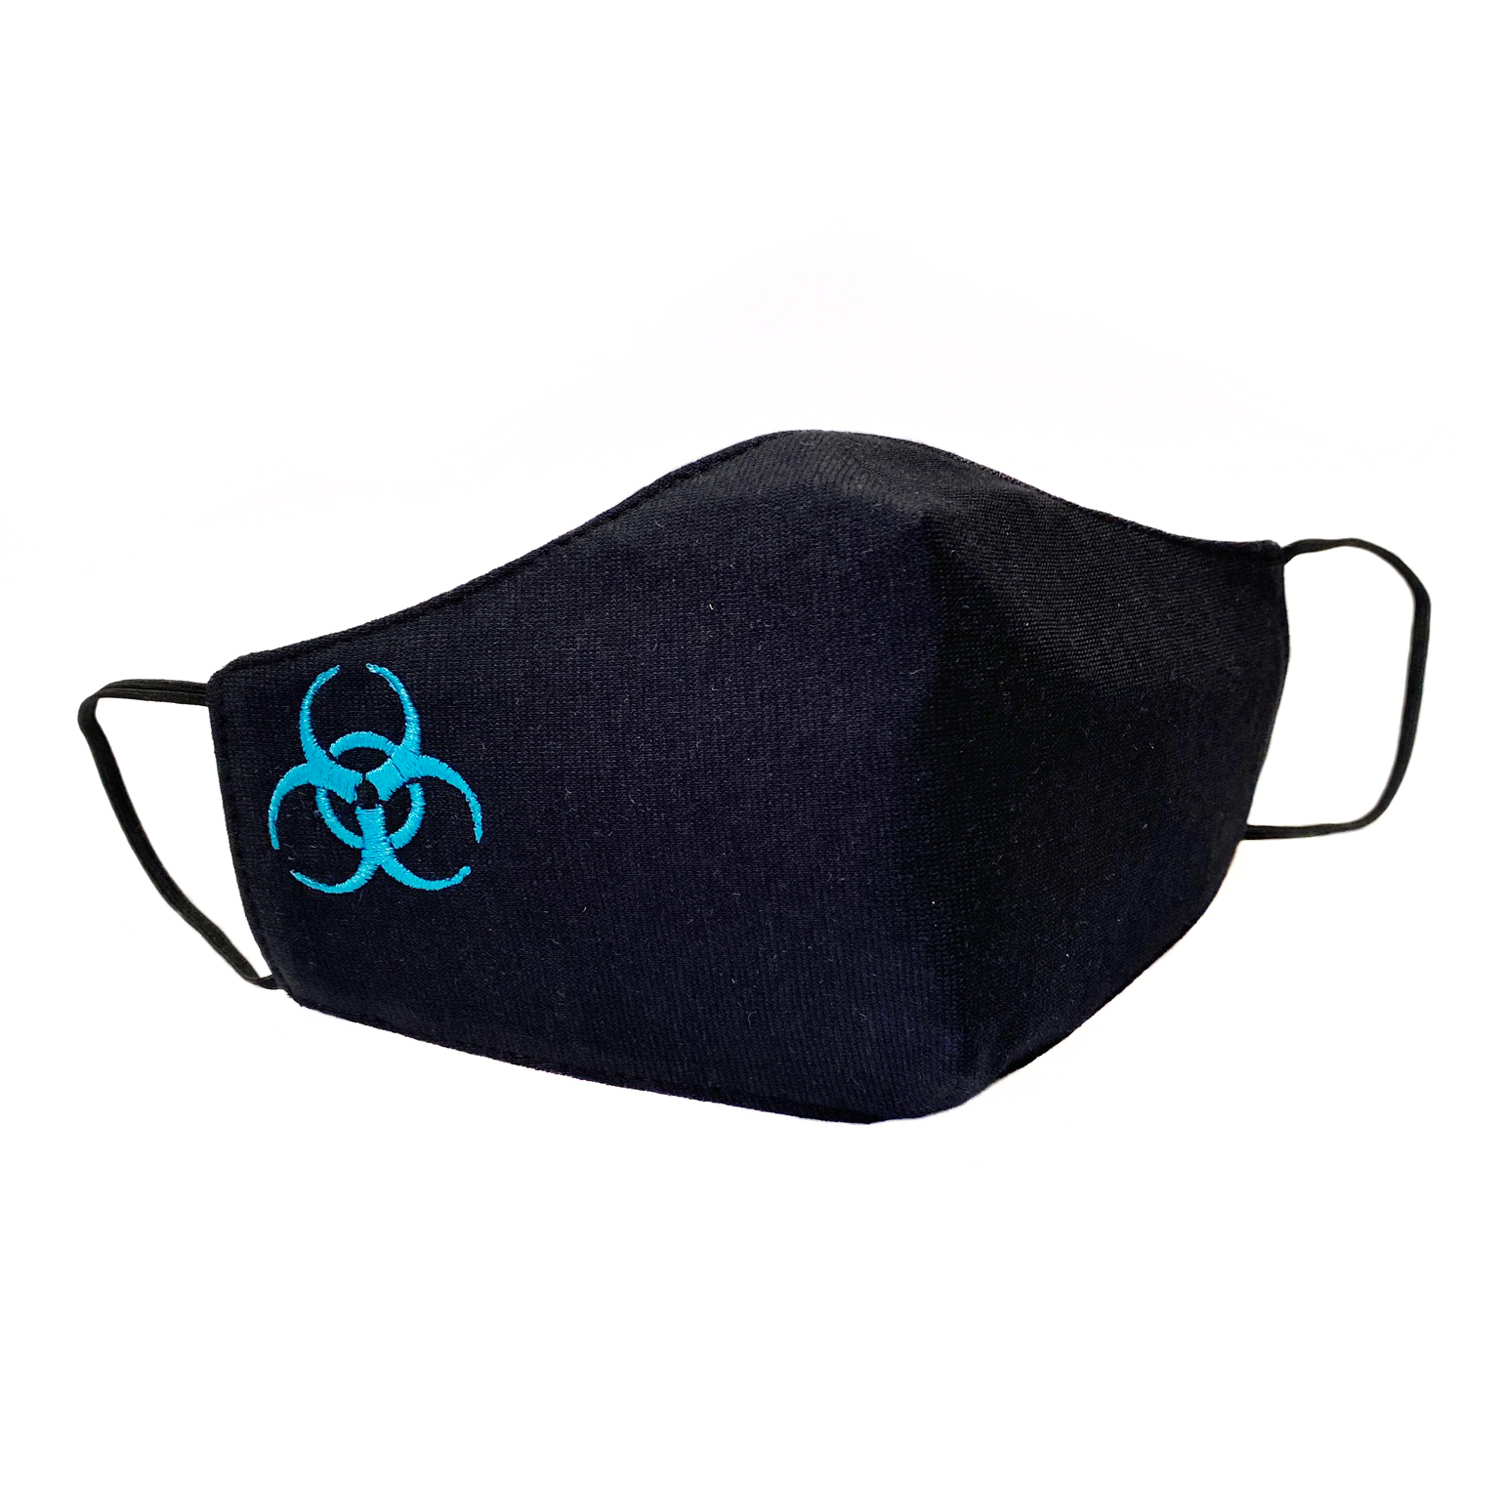 Подростковая защитная маска для лица "Quarantine" черно-голубая